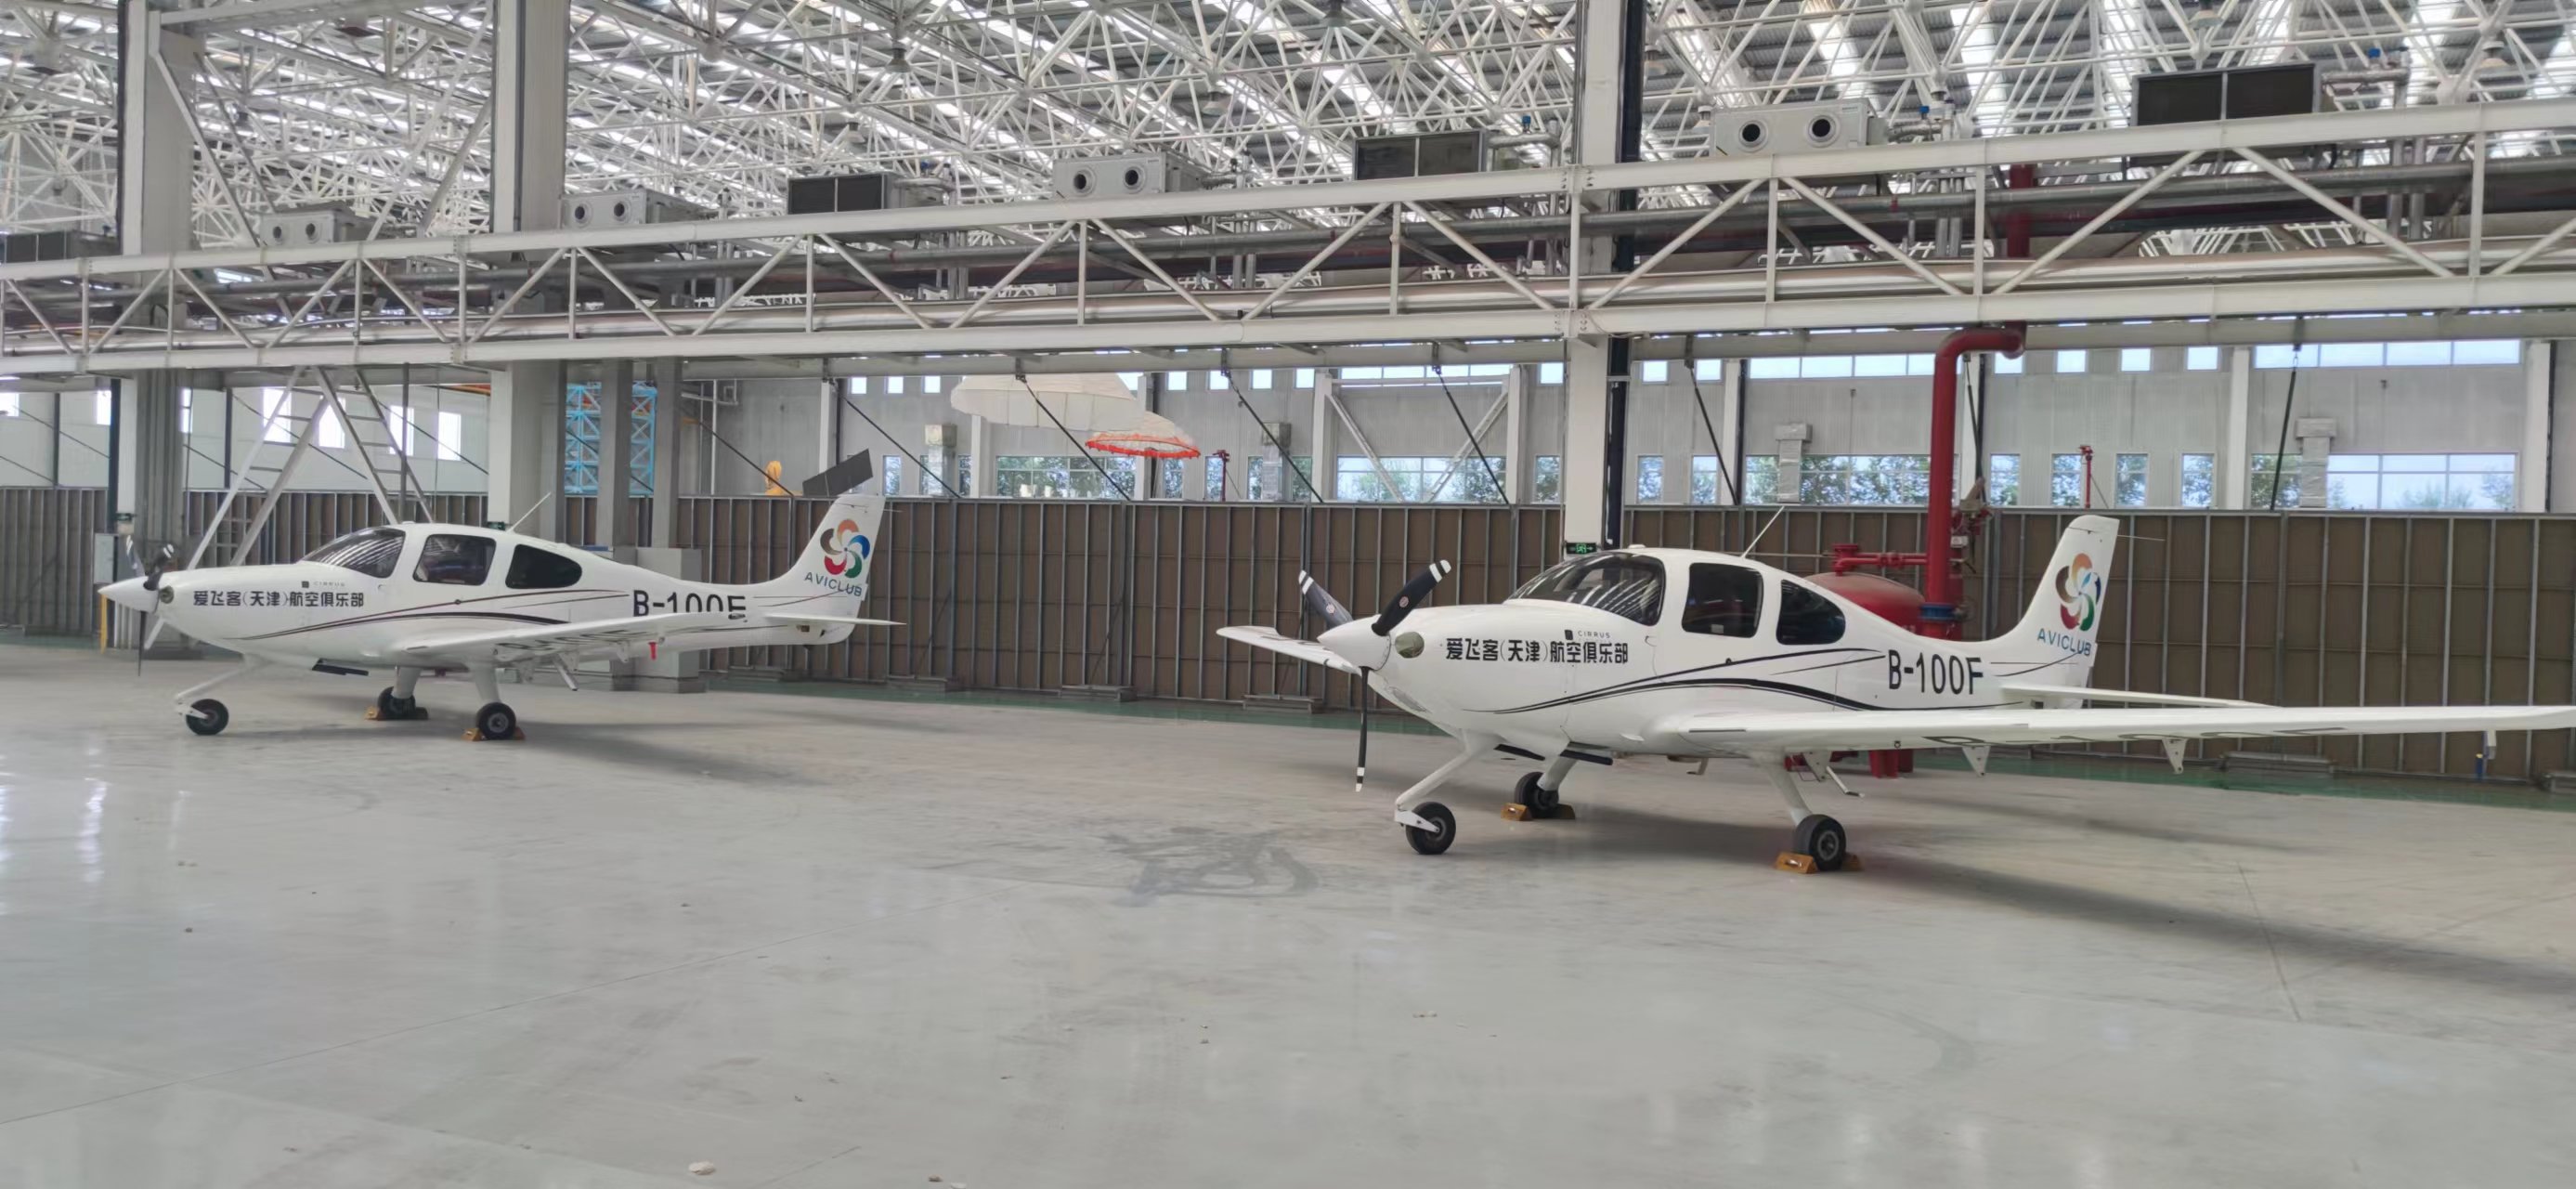 爱飞客航空俱乐部公司部分资产一架西锐SR20飞机B100E出售招标